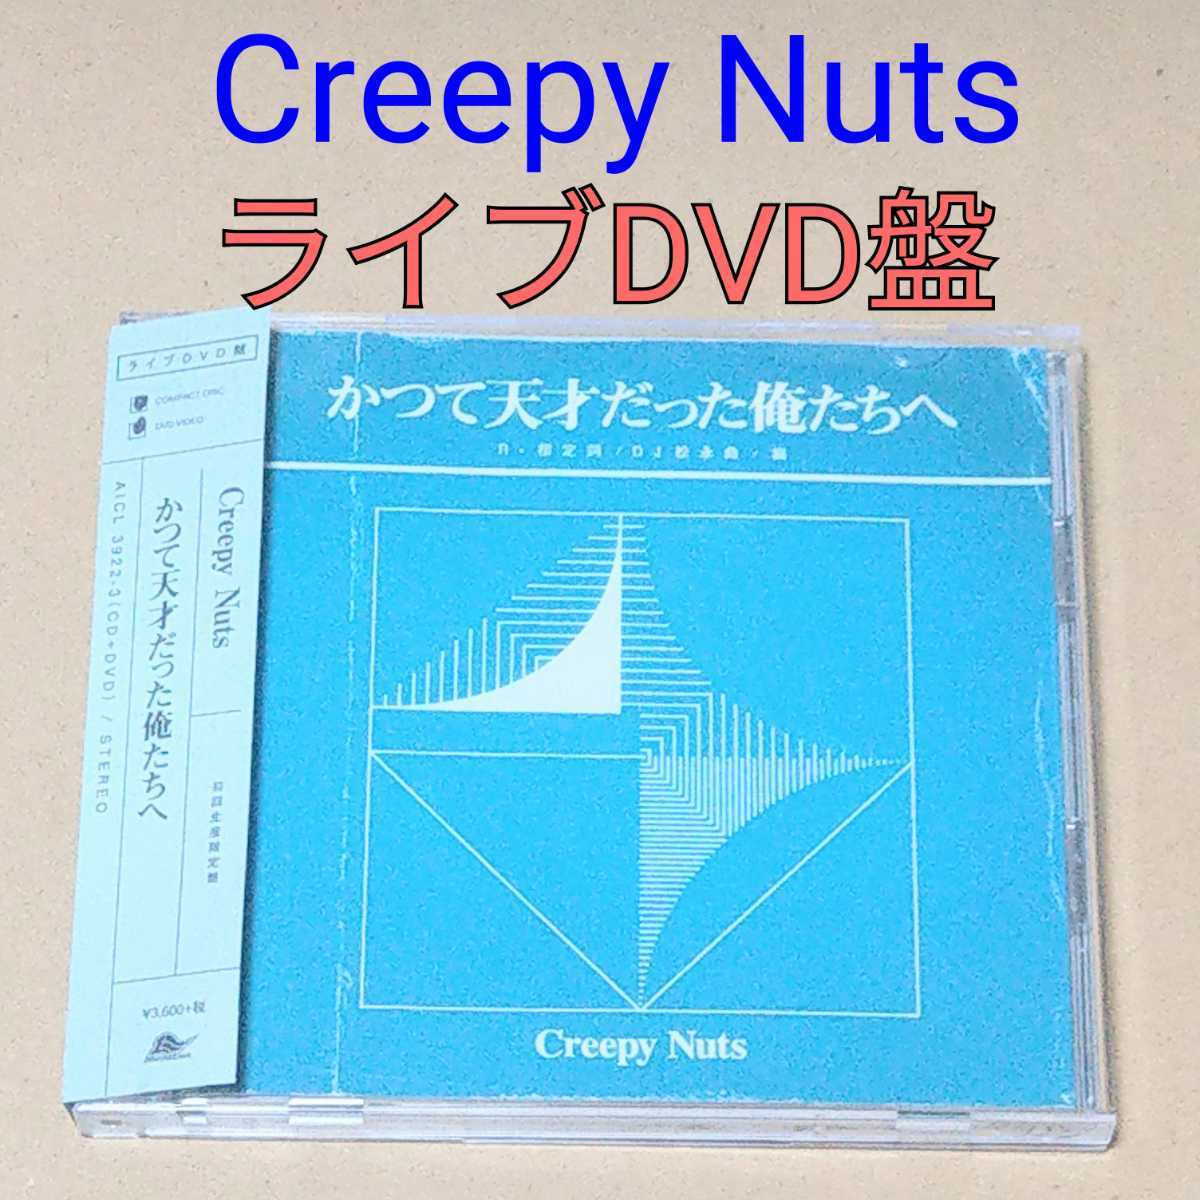 ライブDVD盤 Creepy Nuts かつて天才だった俺たちへ 初回限定盤 クリー 